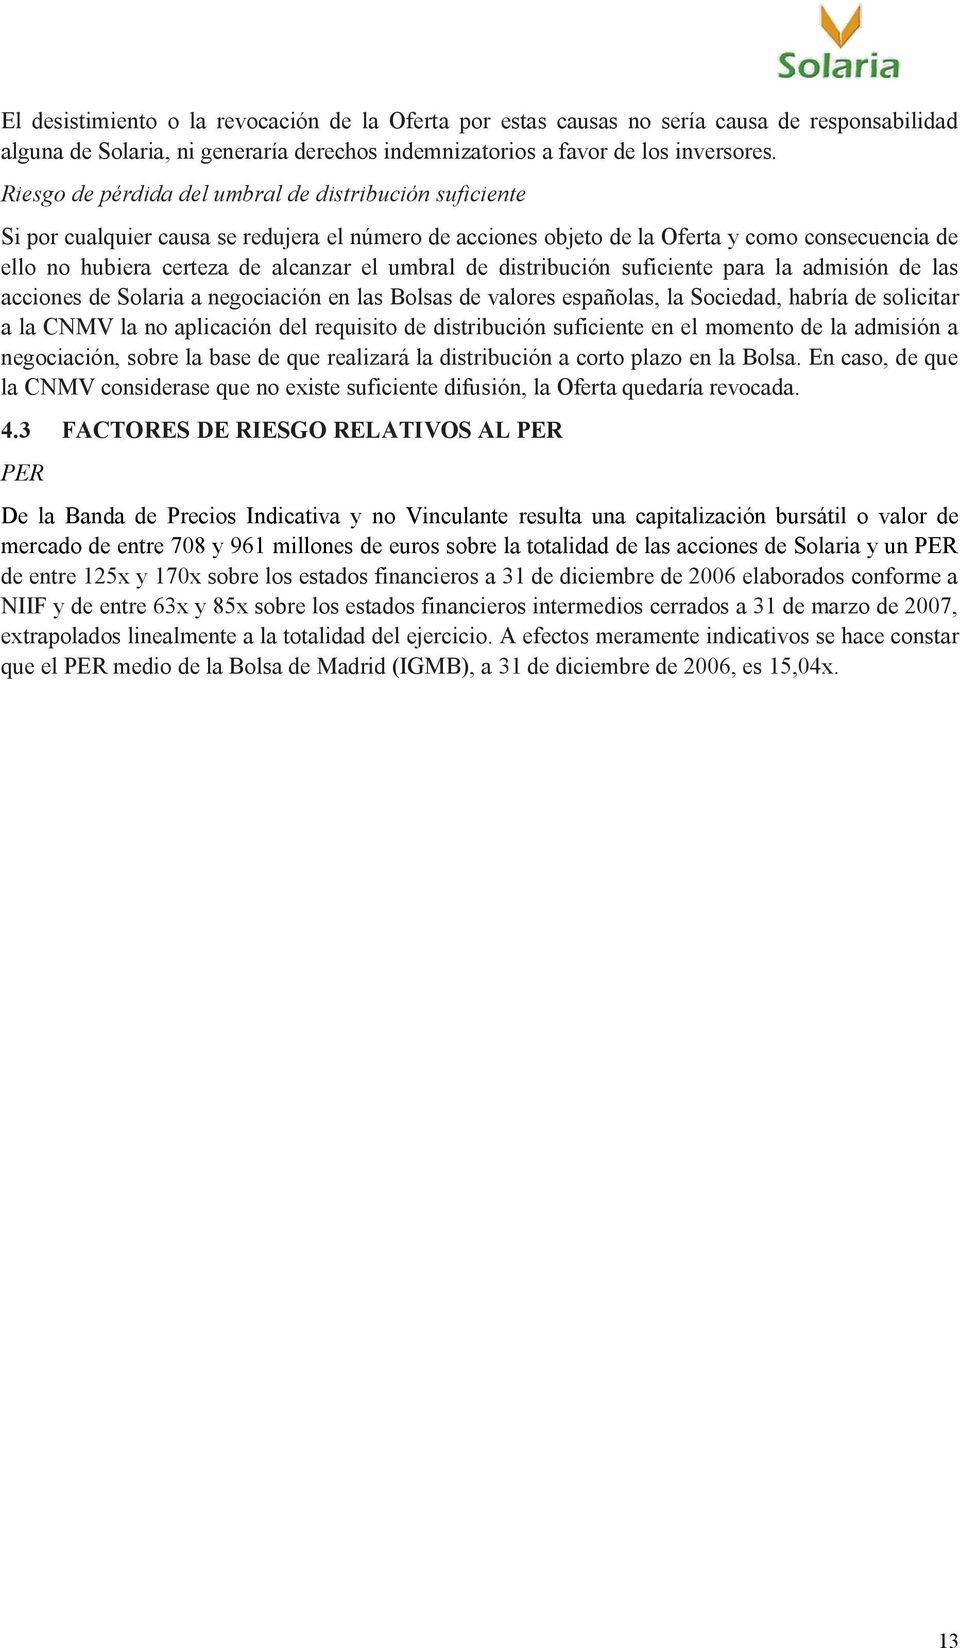 umbral de distribución suficiente para la admisión de las acciones de Solaria a negociación en las Bolsas de valores españolas, la Sociedad, habría de solicitar a la CNMV la no aplicación del